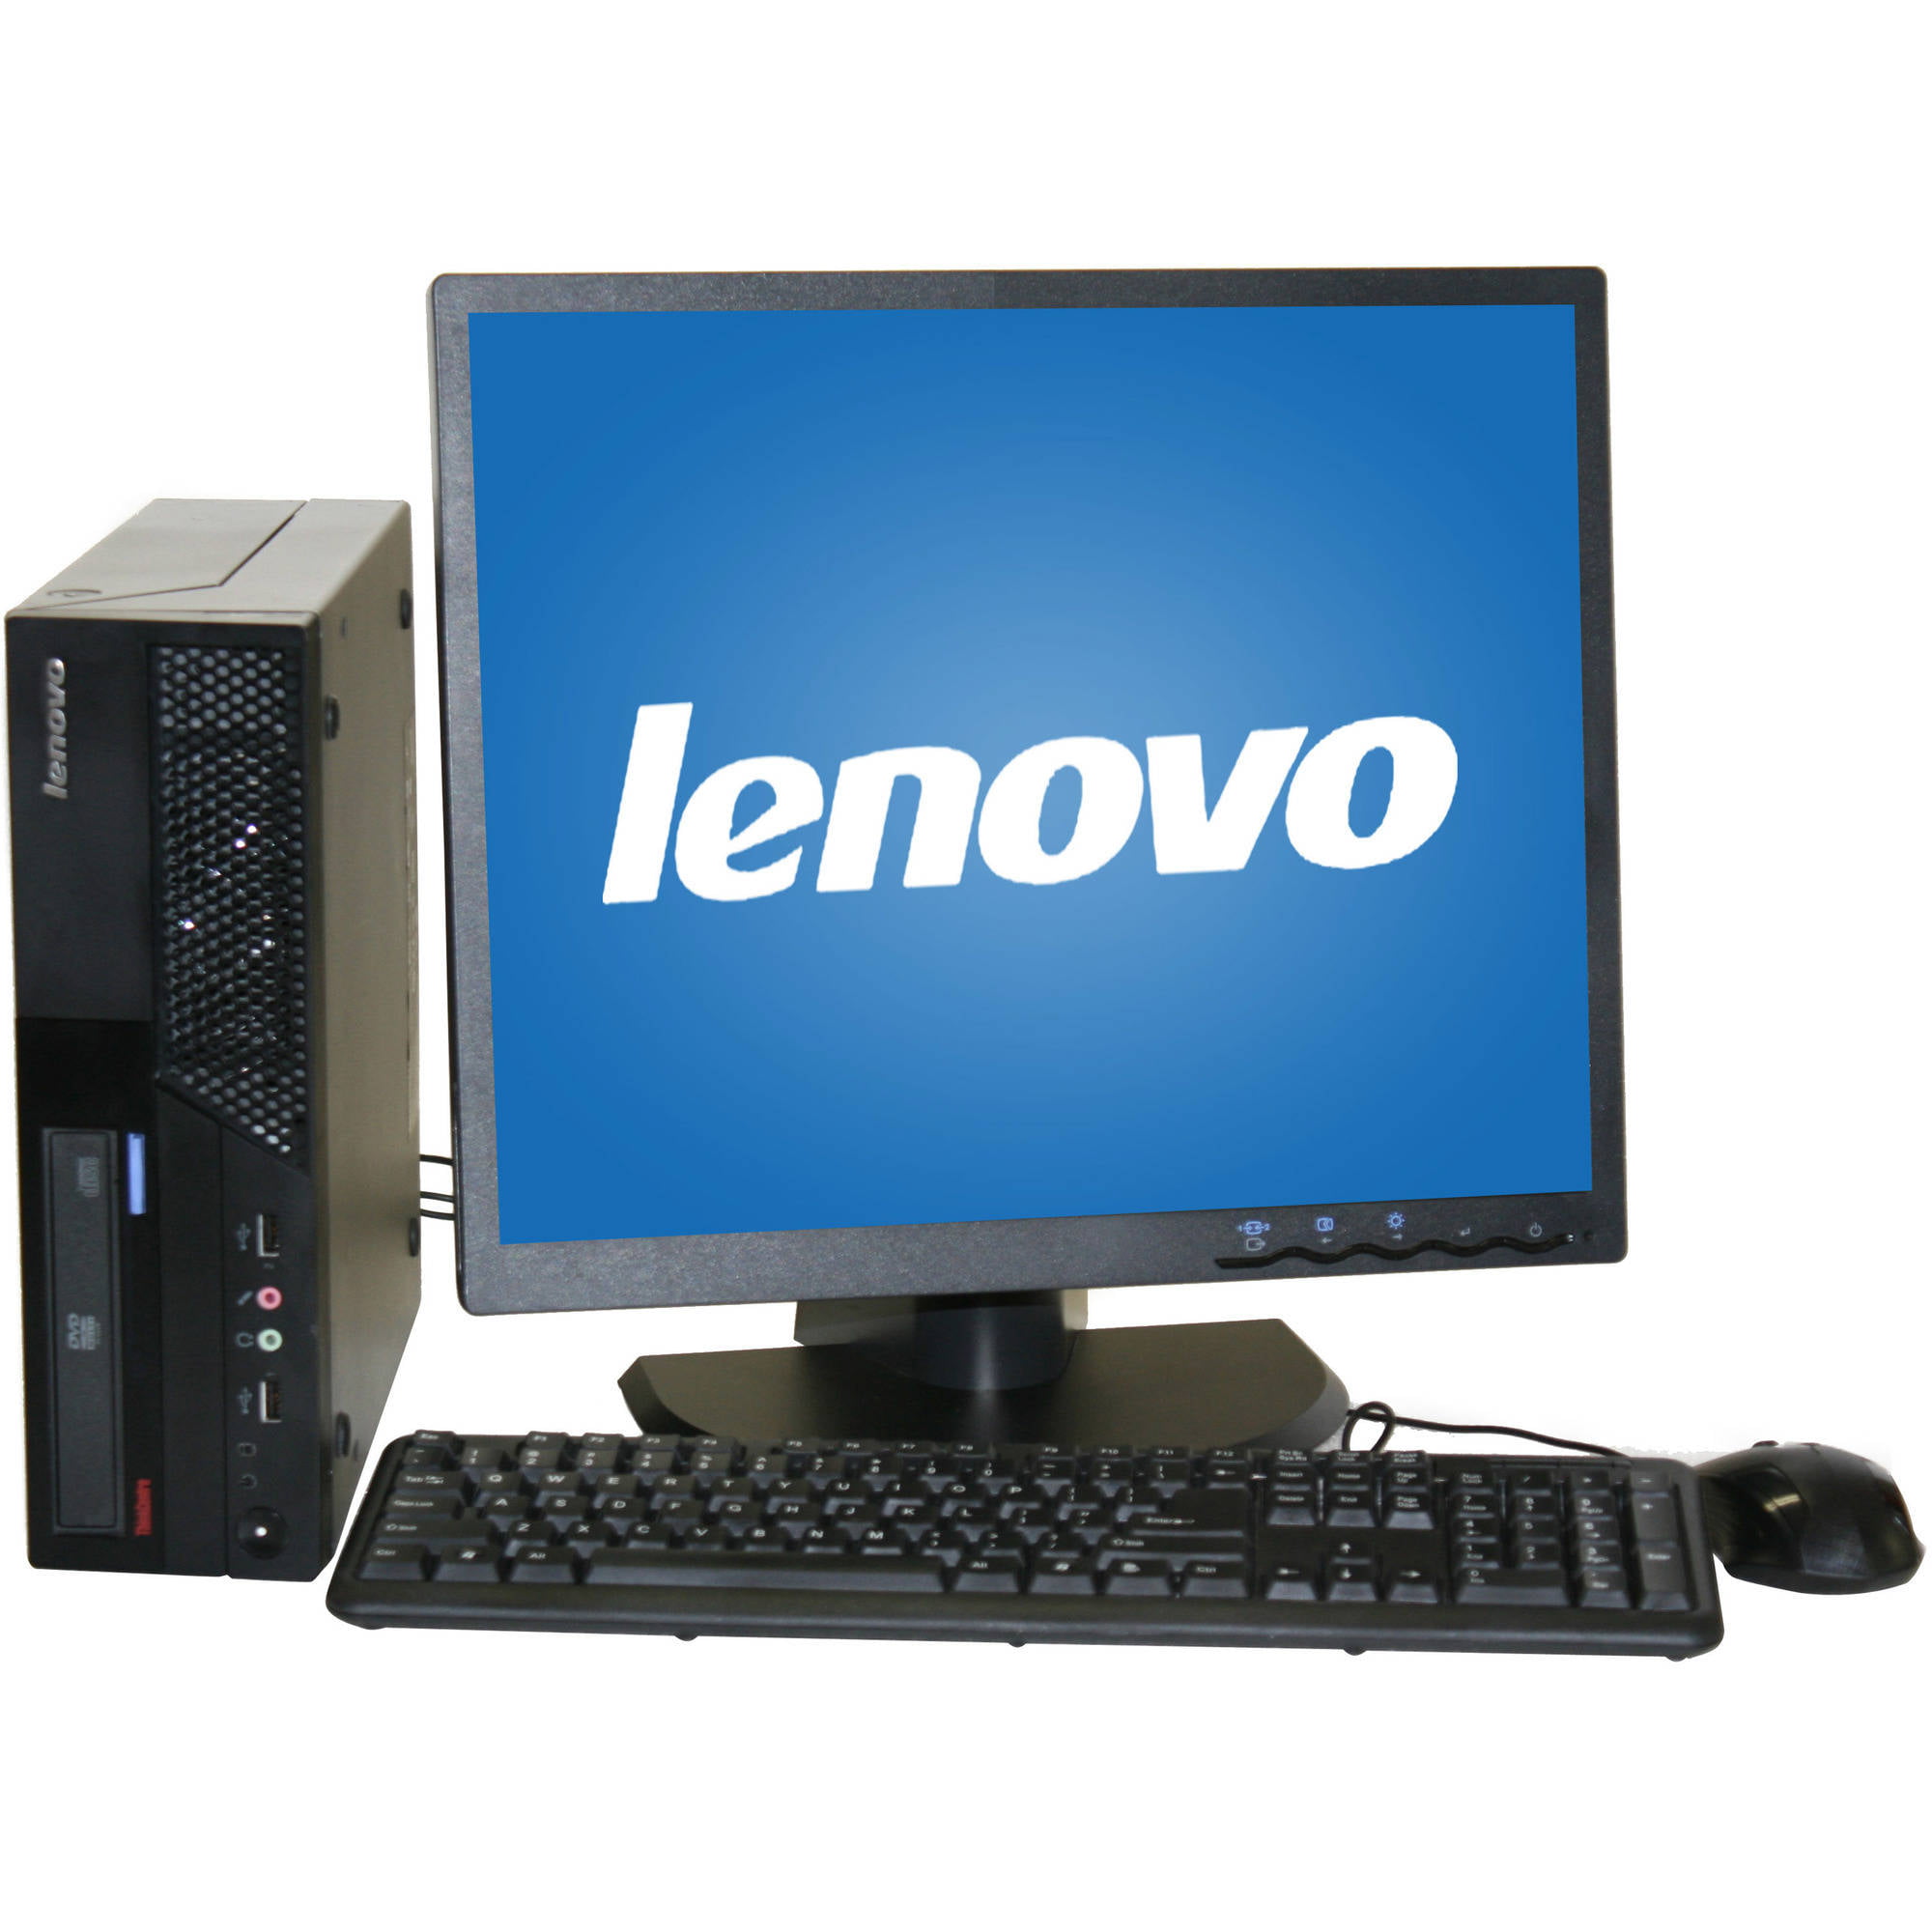 Restored Lenovo M58 Desktop PC with Intel Core 2 Duo Processor, 8GB